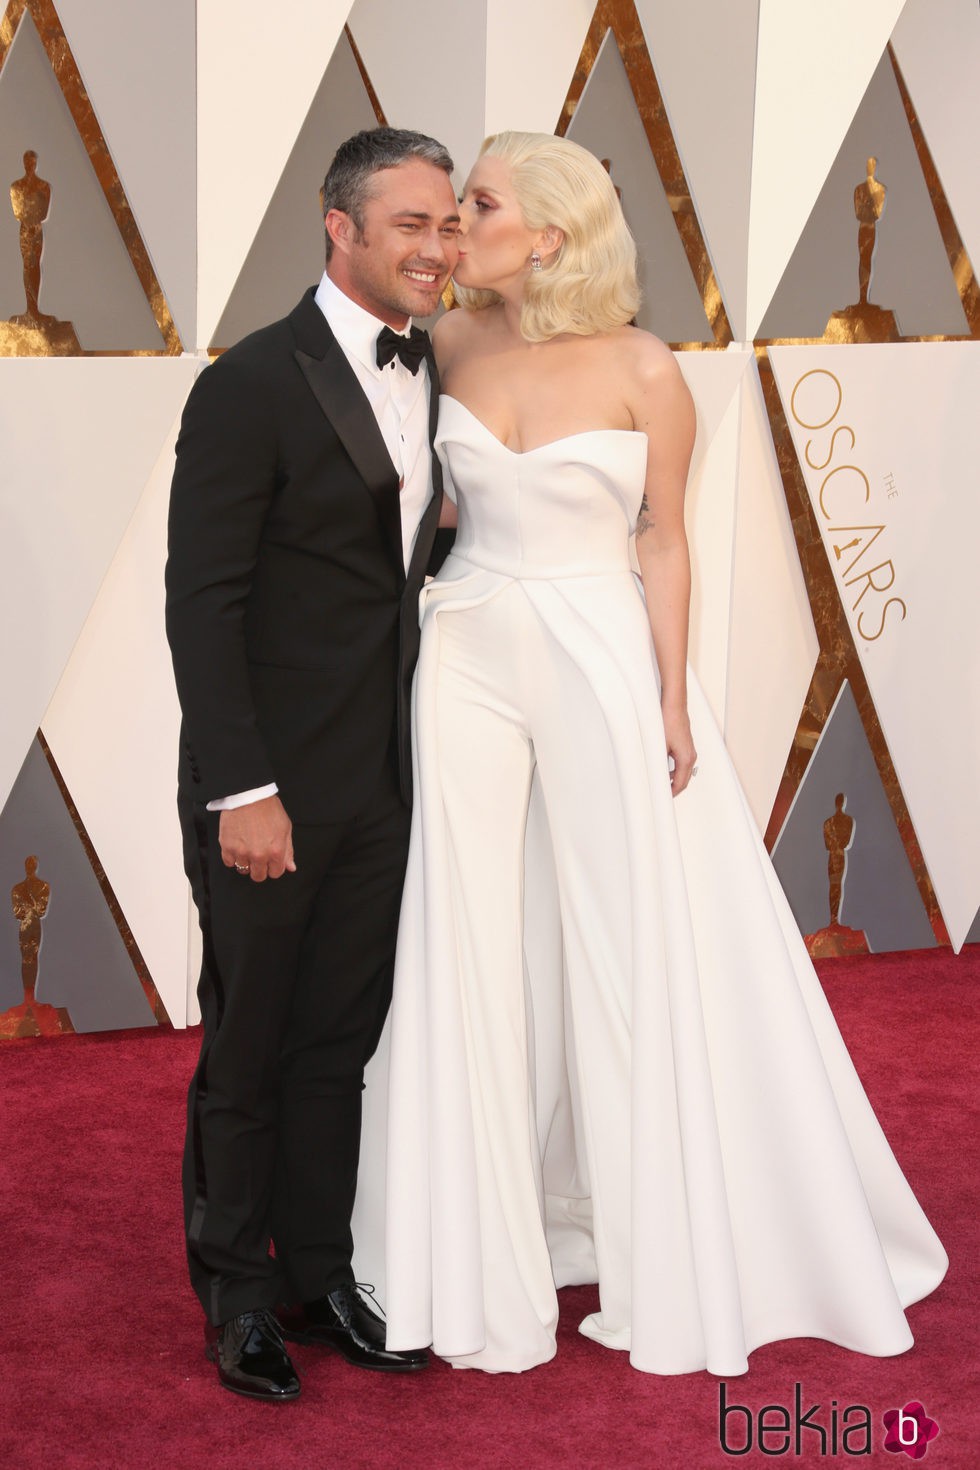 Lady Gaga besando a su prometido Taylor Kinney en la alfombra roja en los Premios Oscar 2016